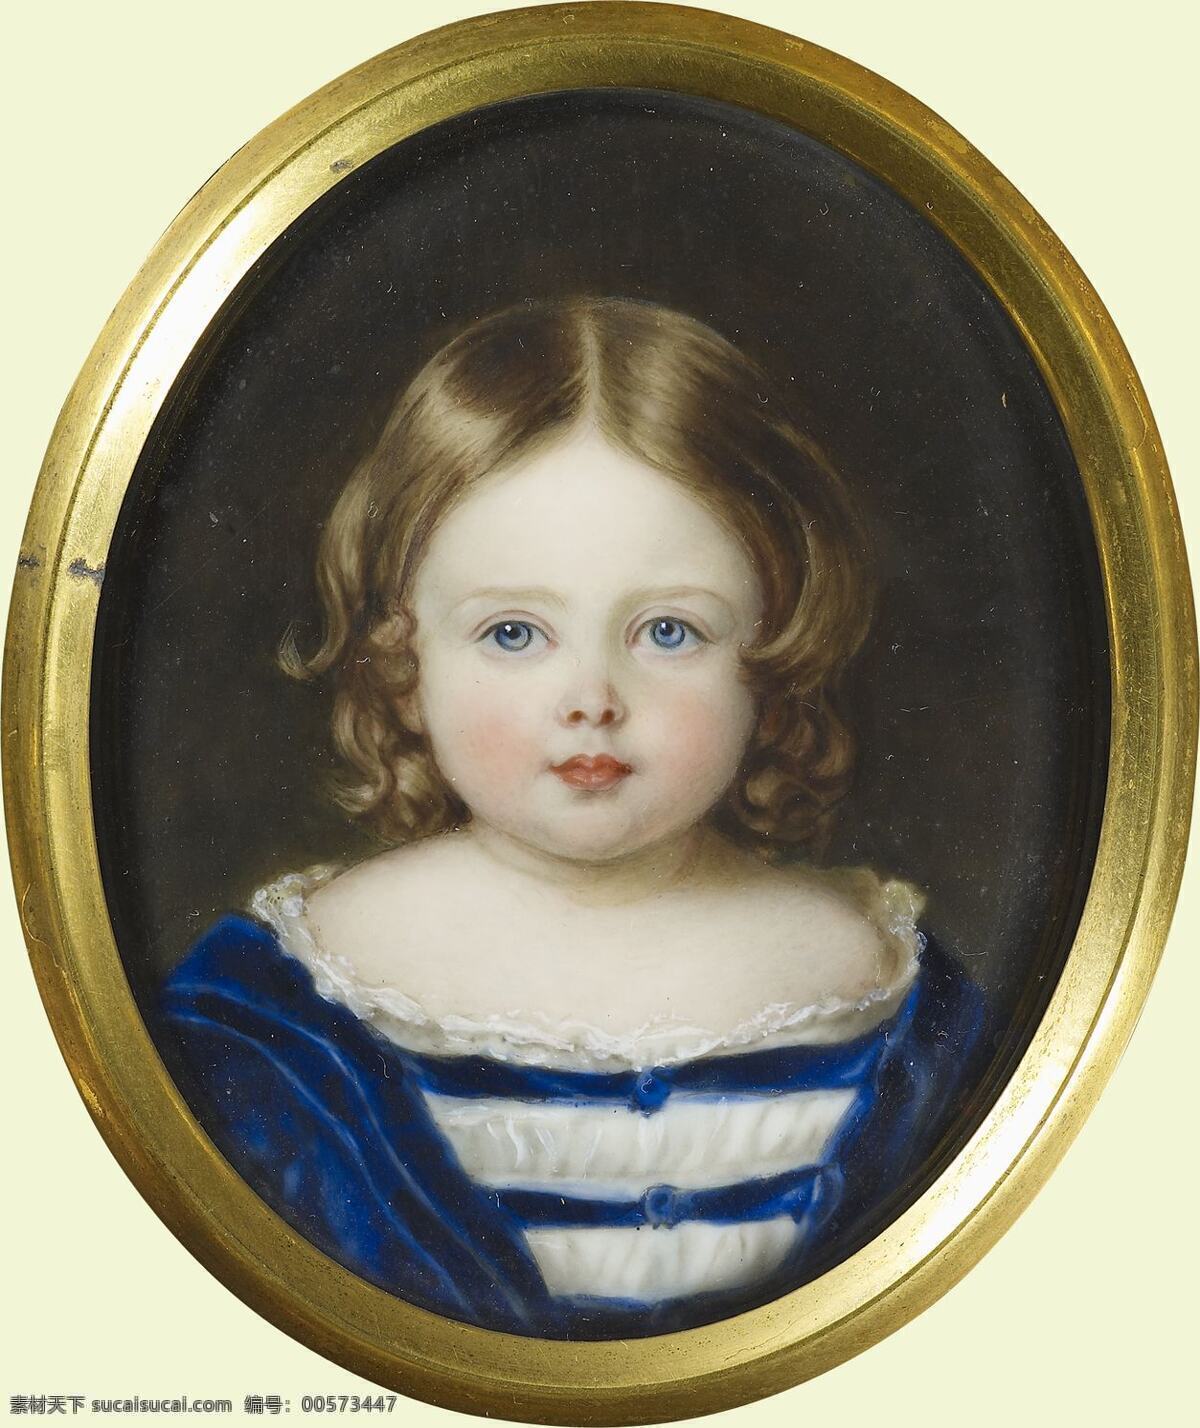 维多利亚 长 公主 英国公主 德意志皇后 威廉二世生母 维多利亚女王 长女 微型画 世纪 水彩画 文化艺术 绘画书法